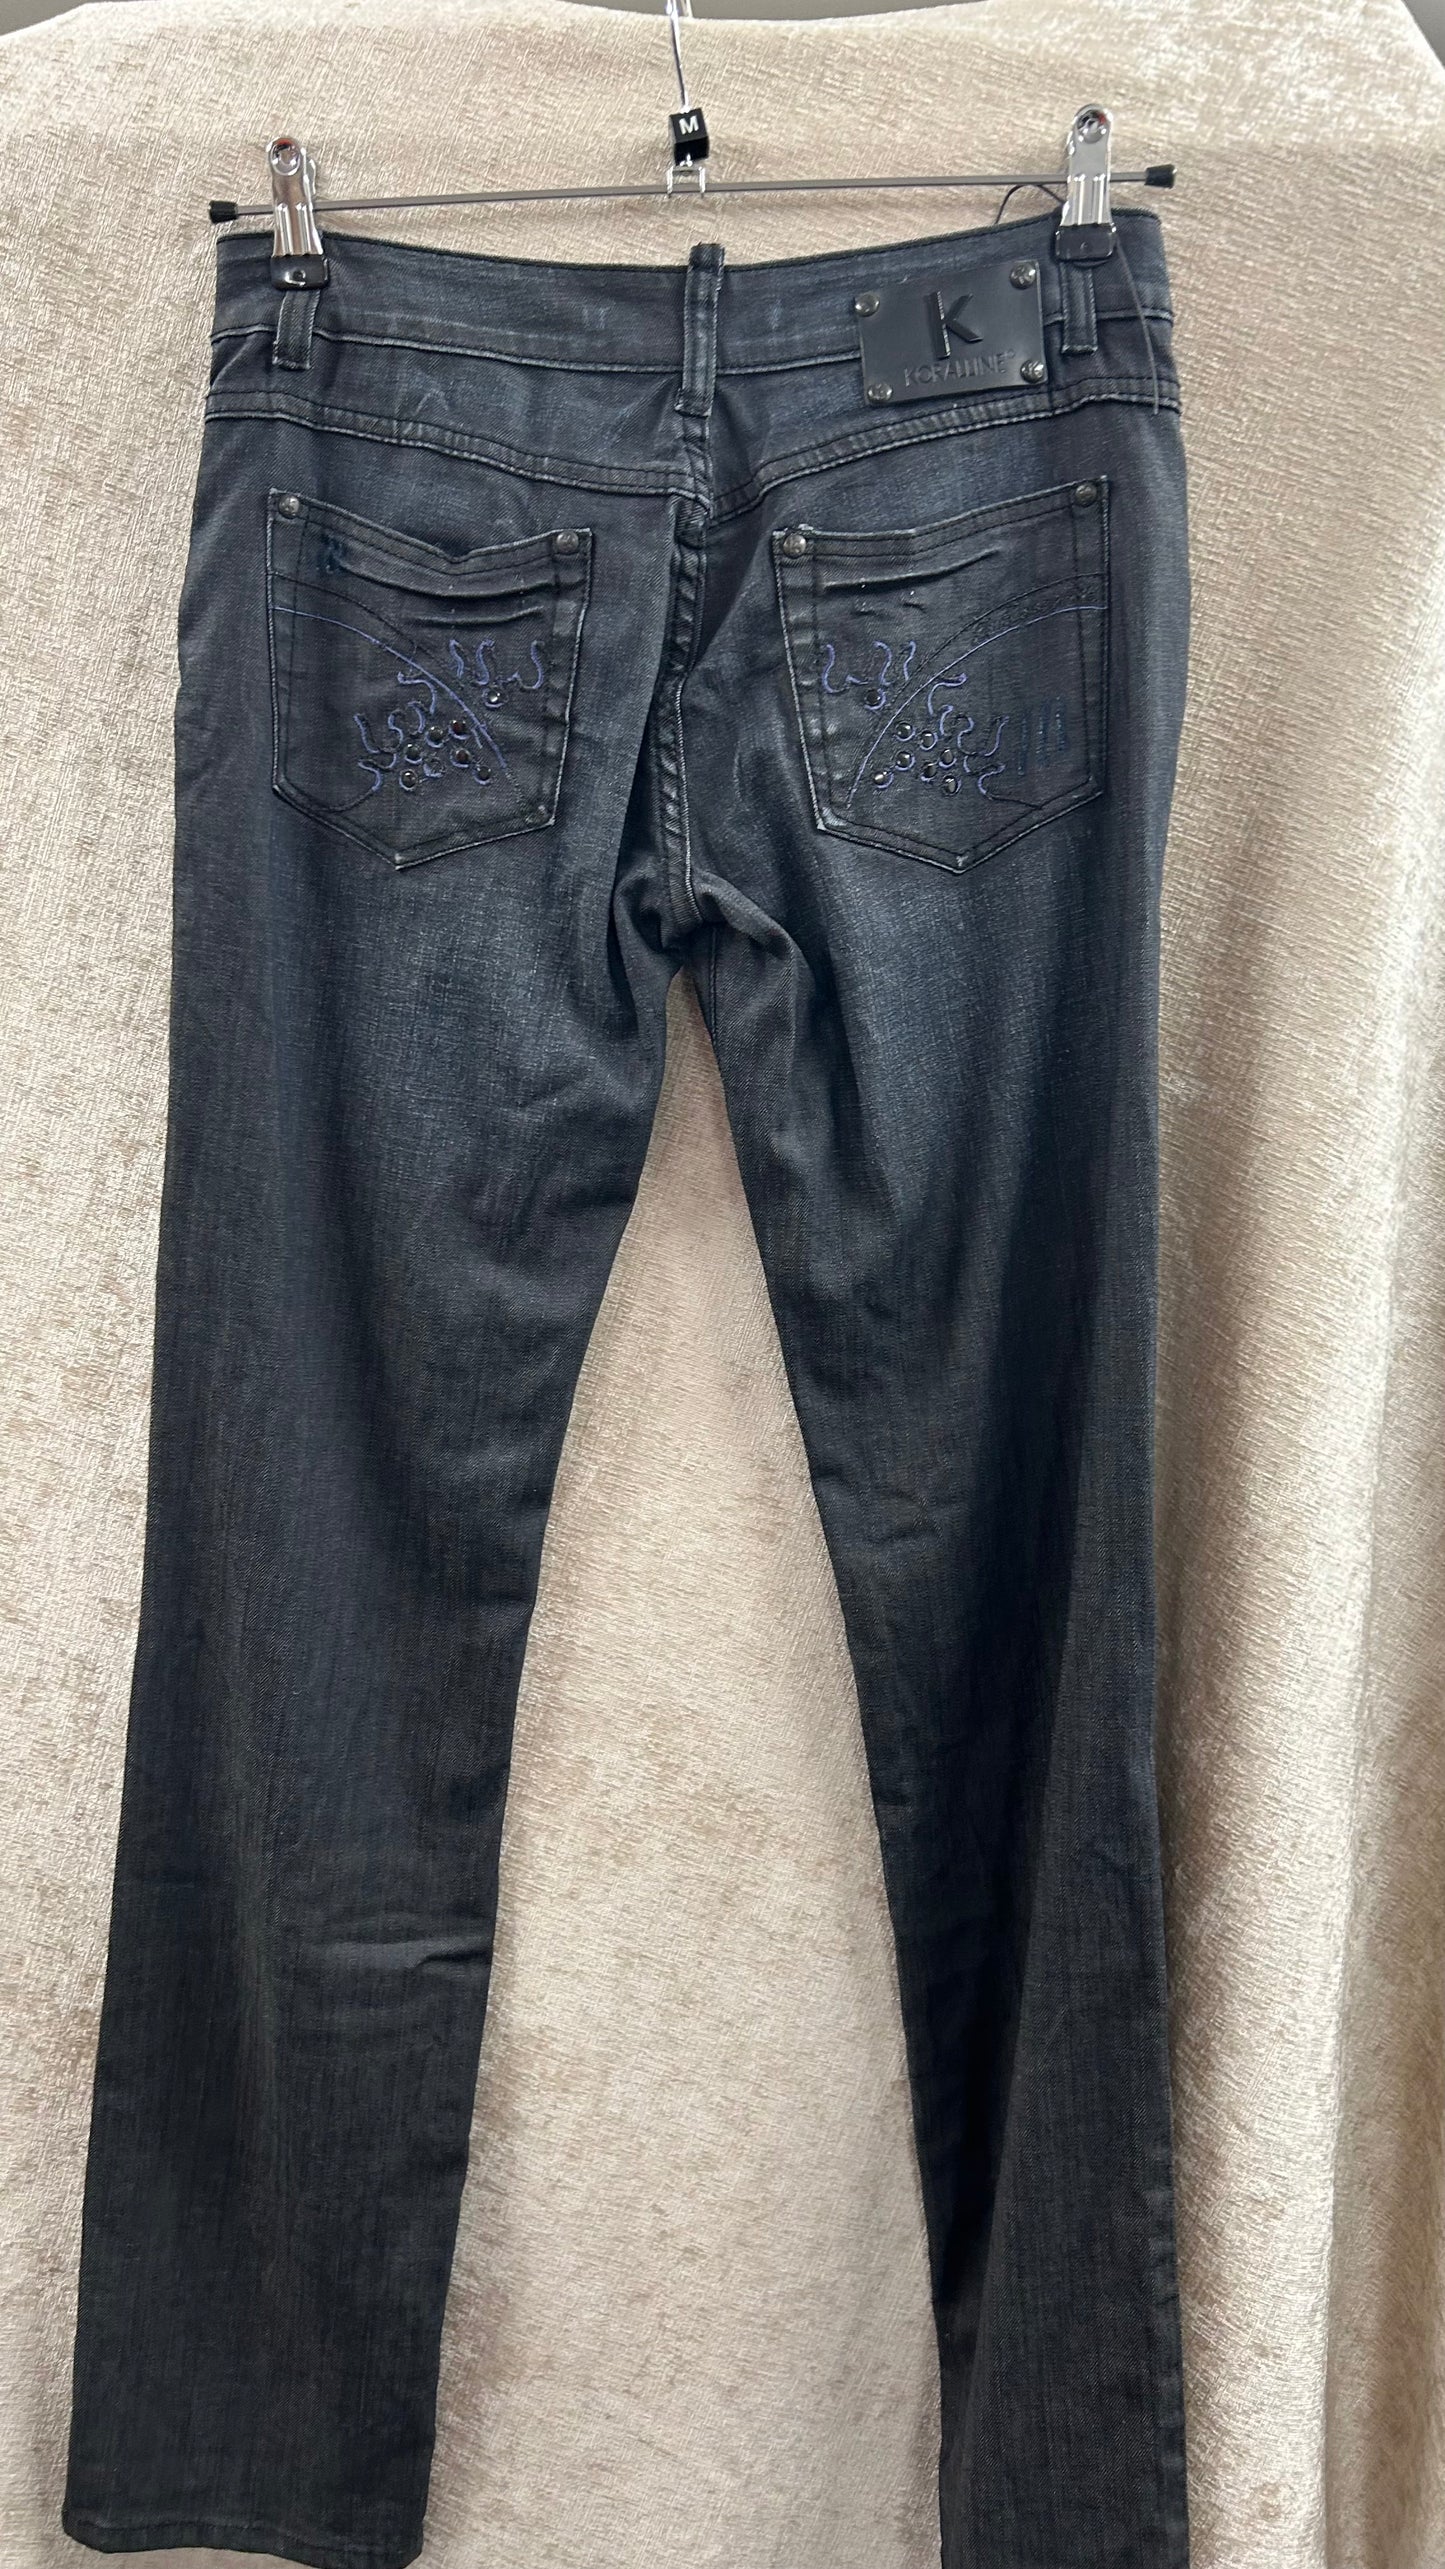 BNWT Koralline Dark Blue Jeans size 34